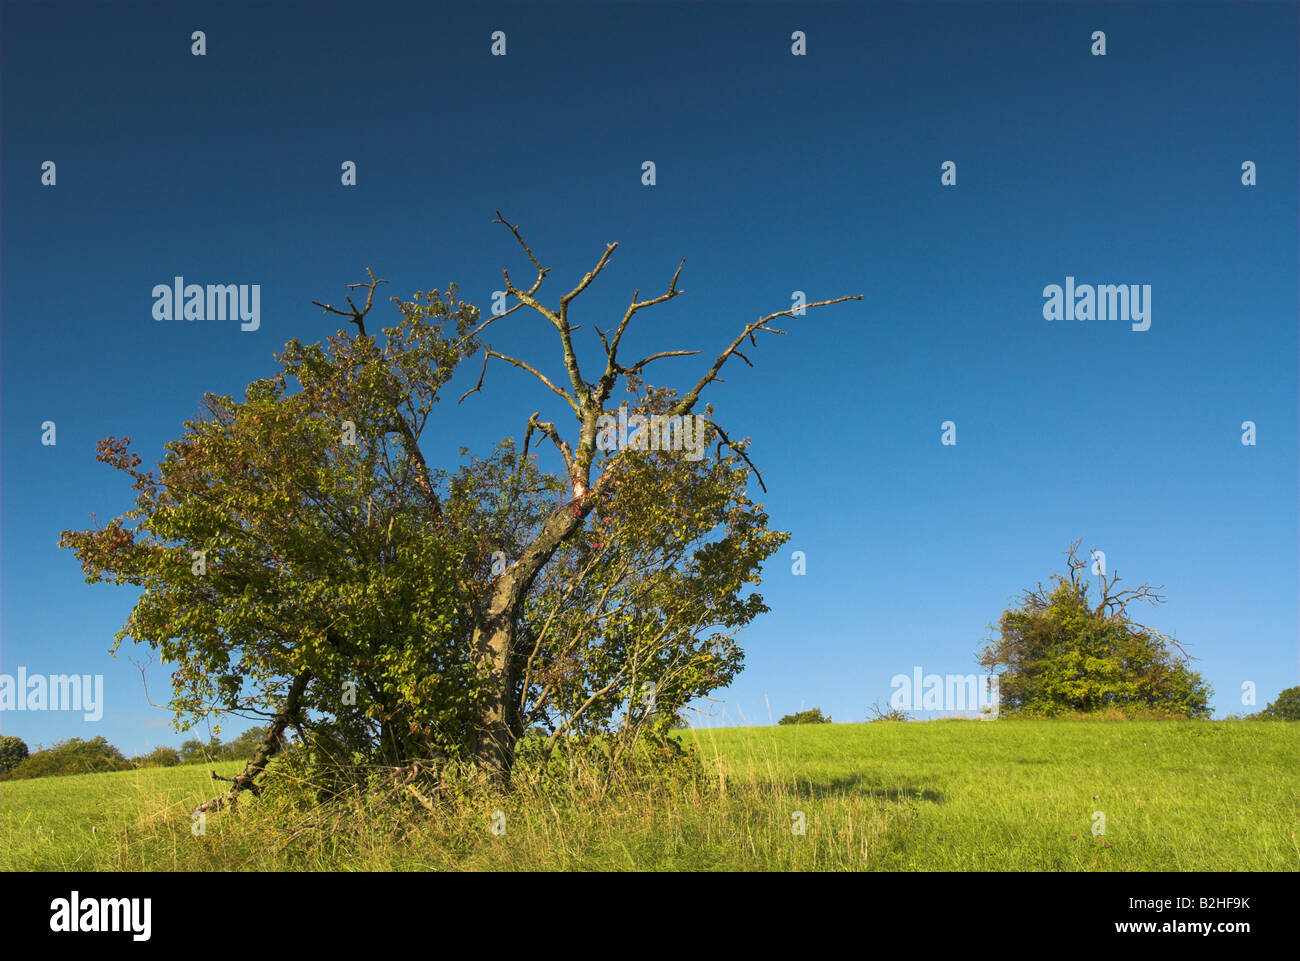 Legno morto albero morto coarse impurità legnose paesaggio di campagna scenario Foto Stock